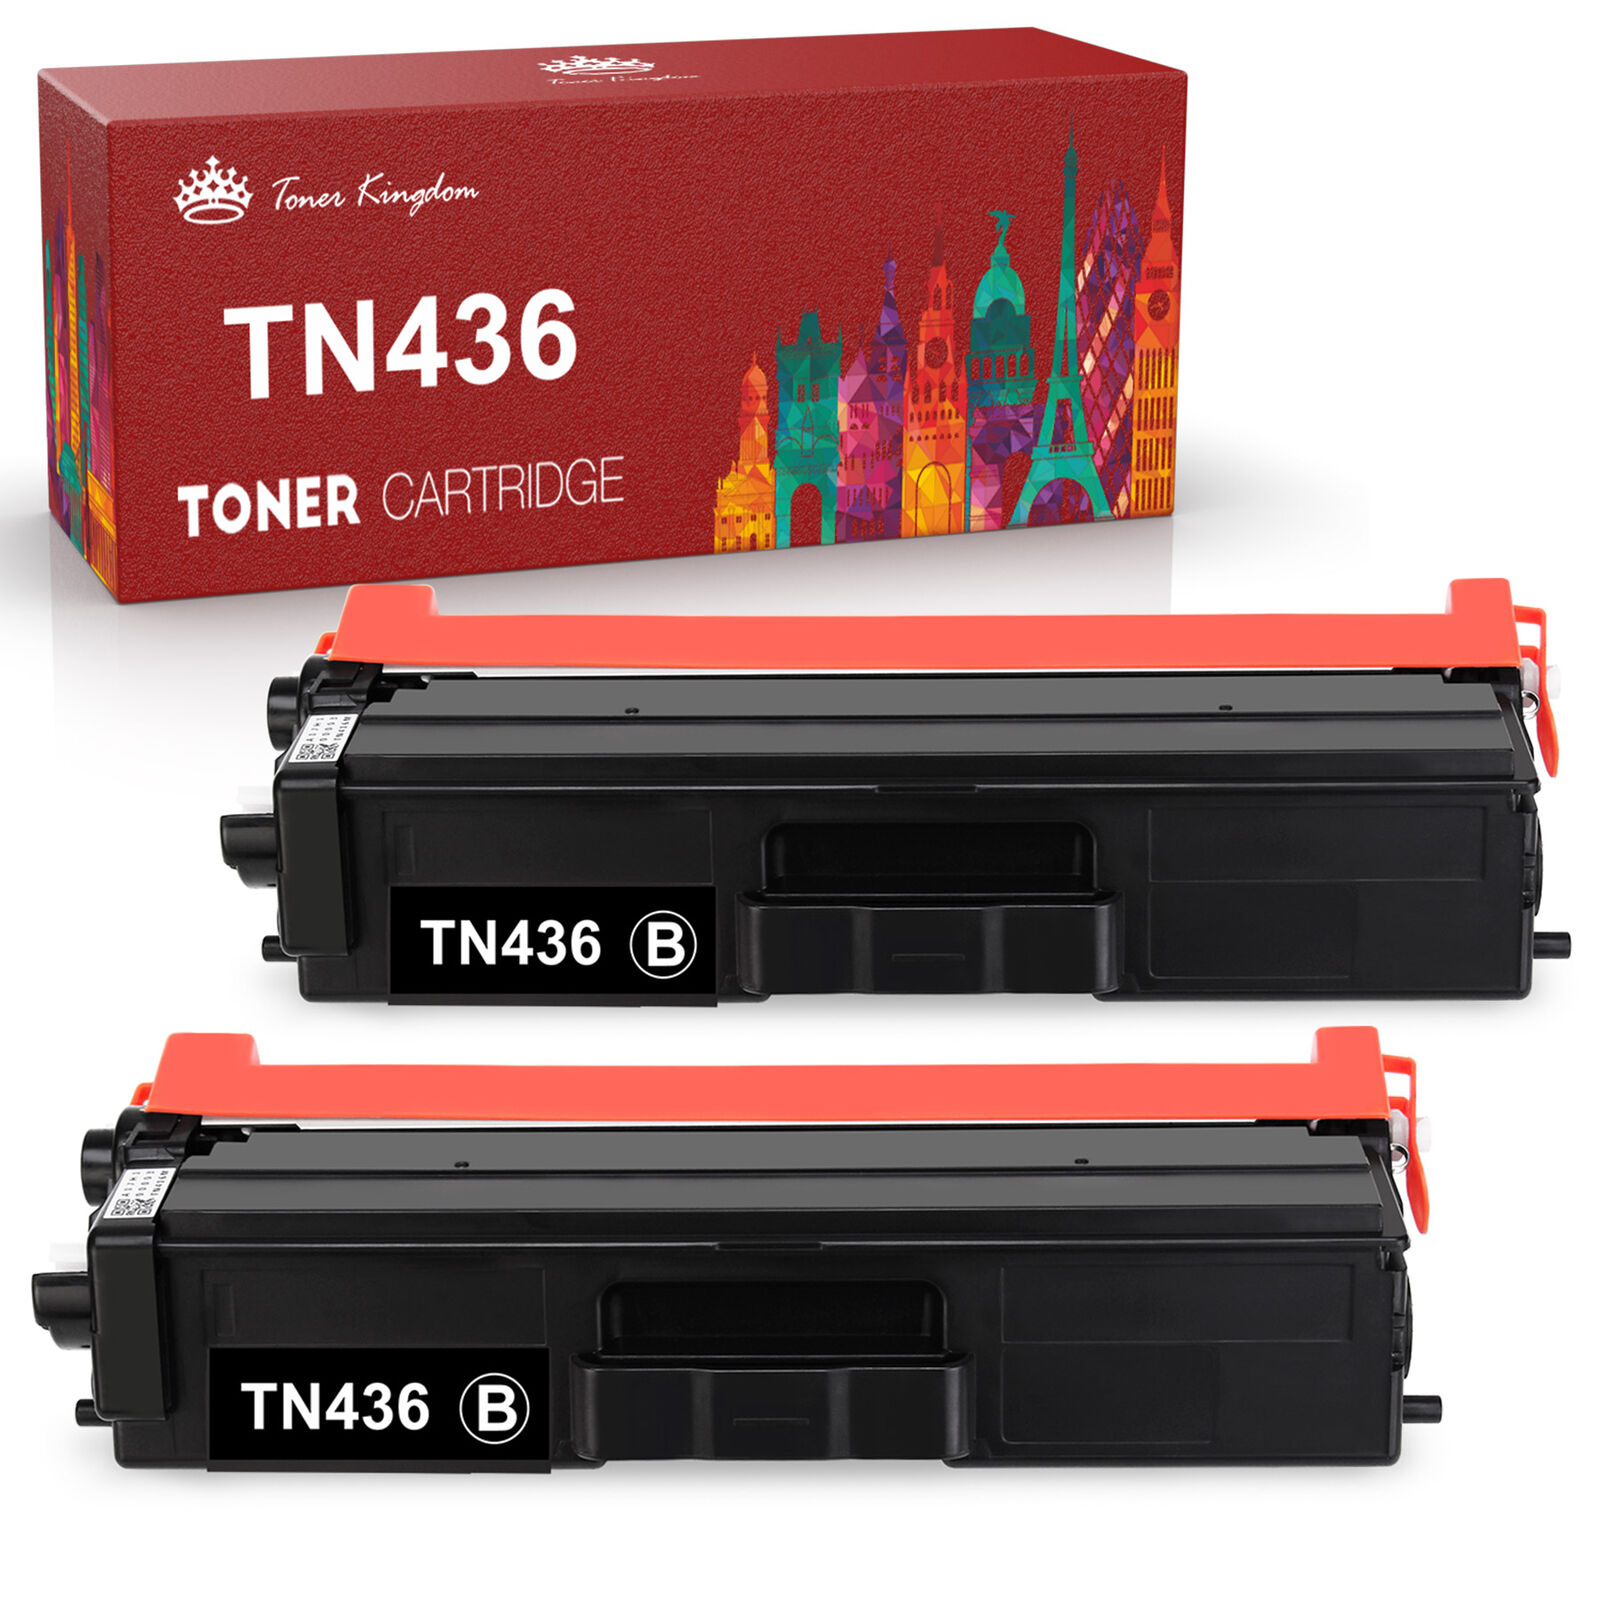 2x TN436 Toner Cartridge for Brother TN433 HL-L8360CDWT MFC-L8900CDW High Yield